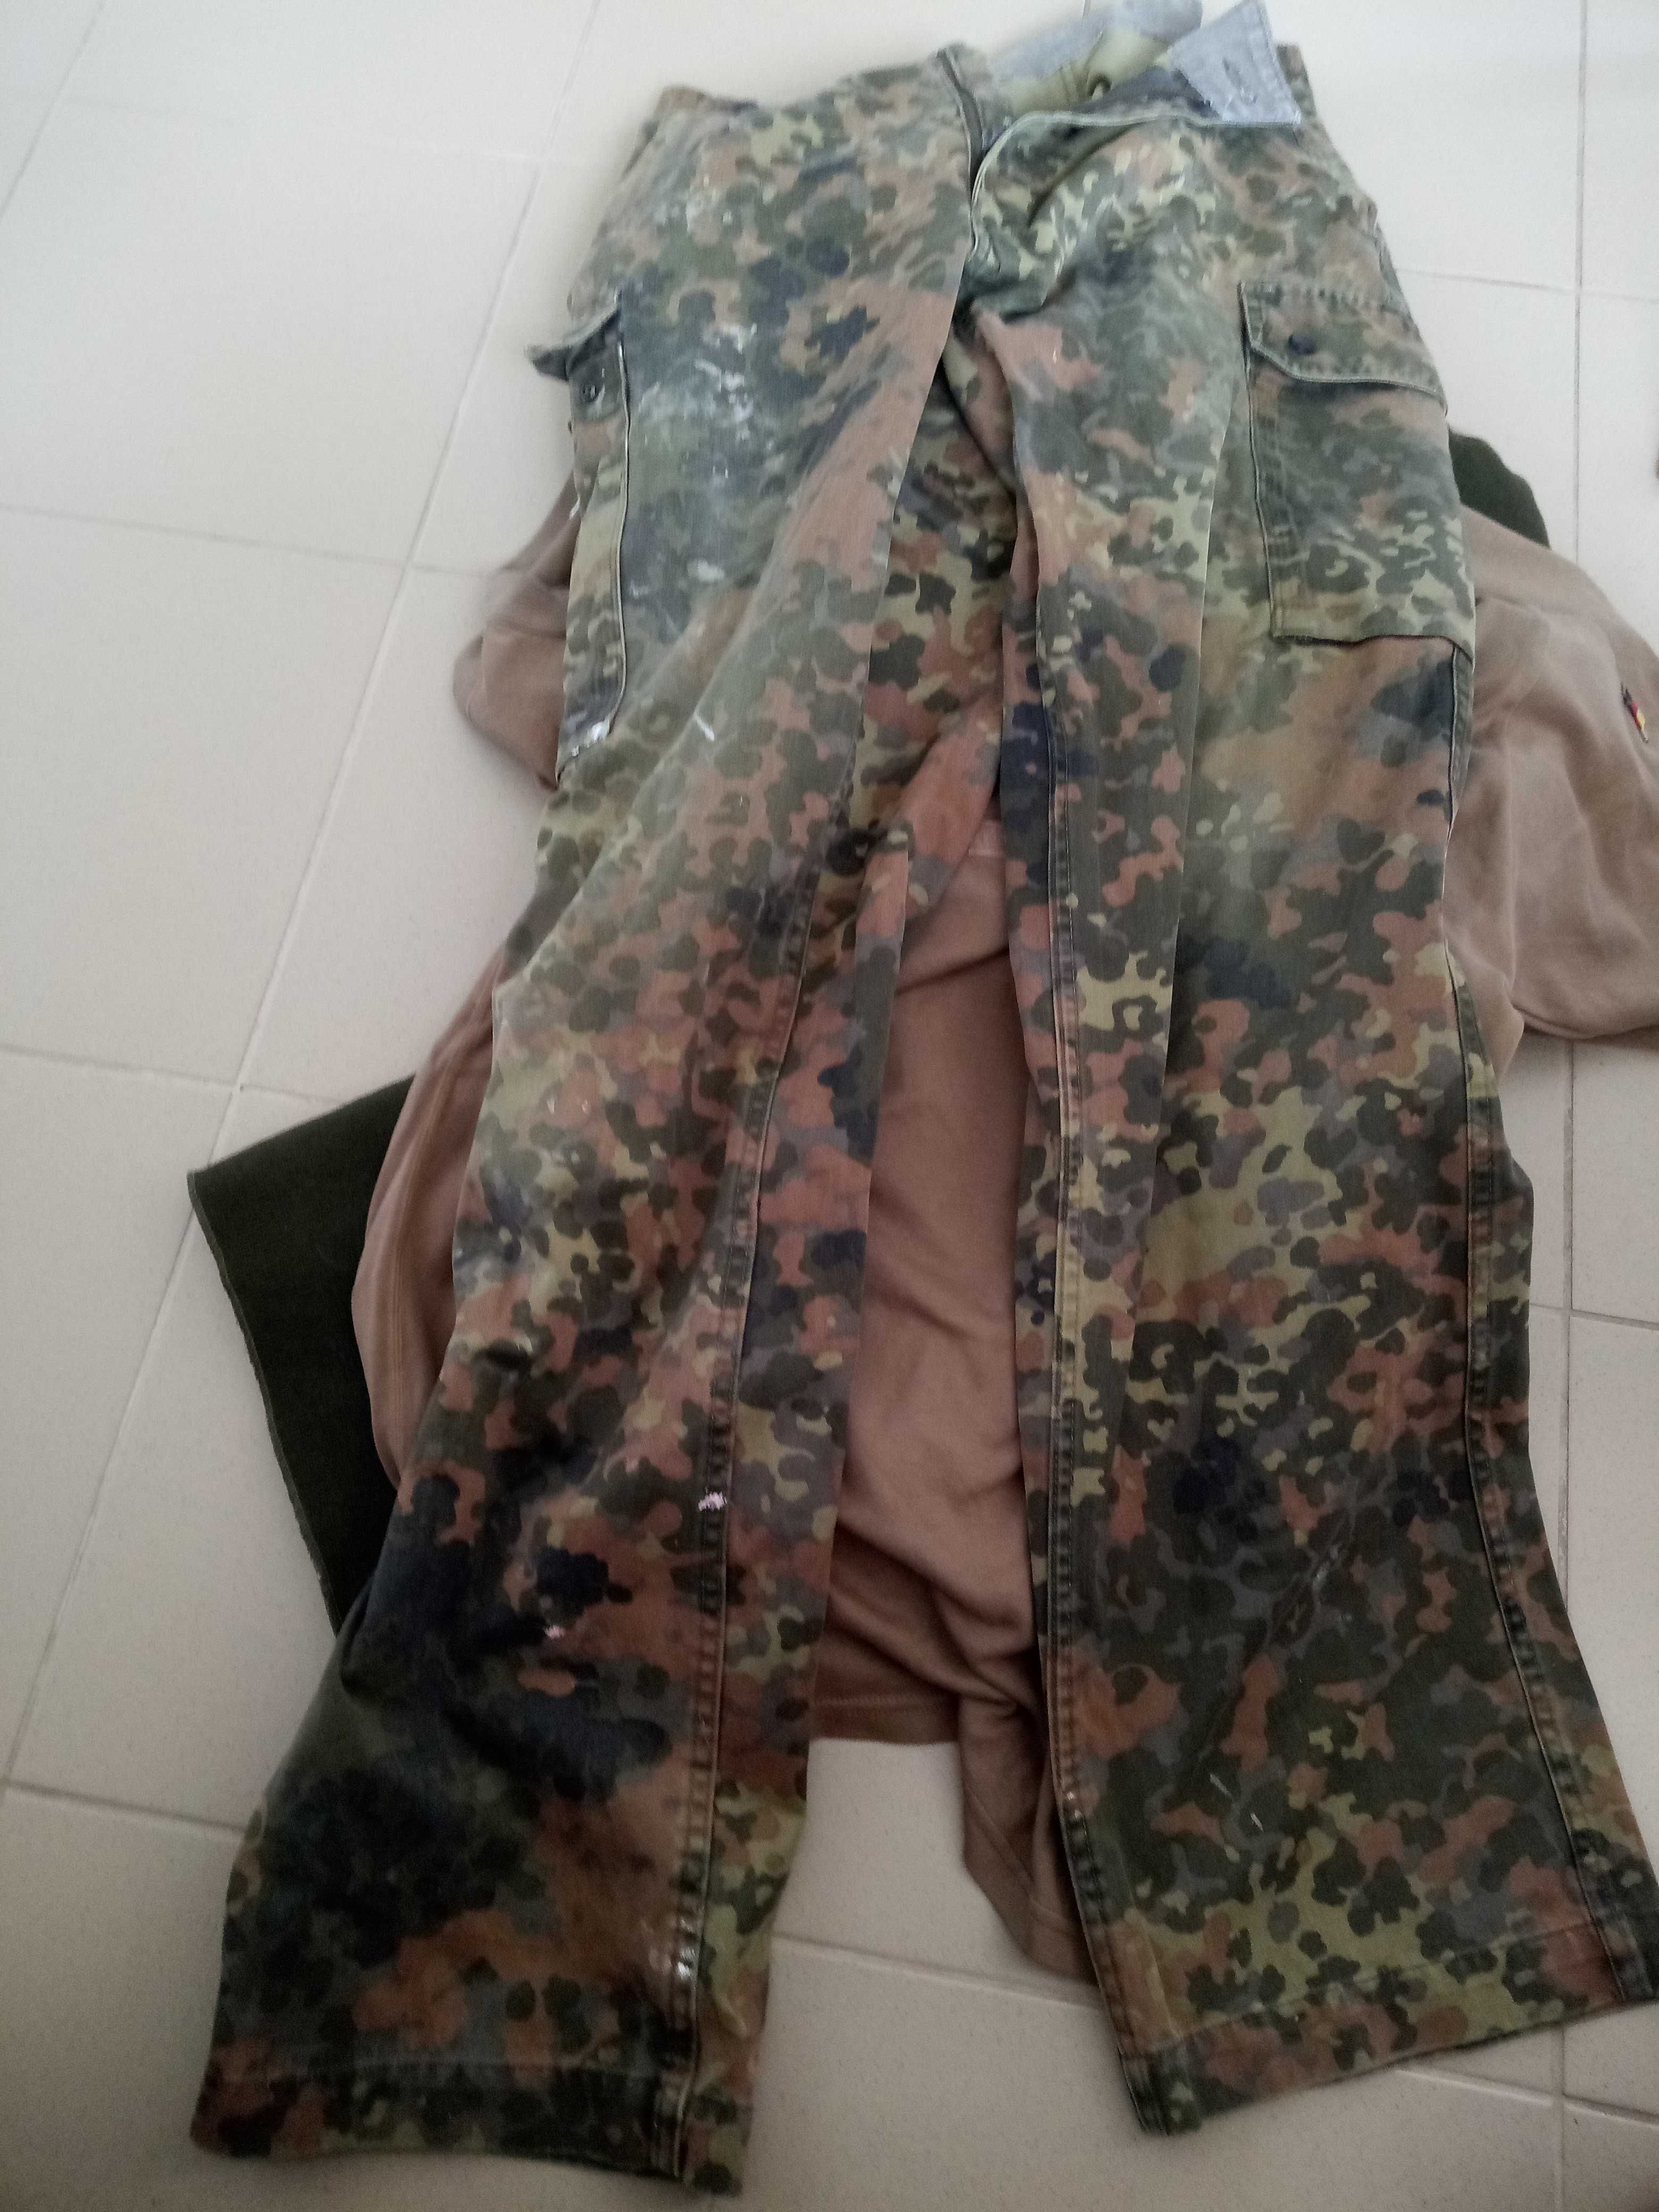 zestaw bundeswehr spodnie ocieplaczex2 koszule x2 męskie lub damskie